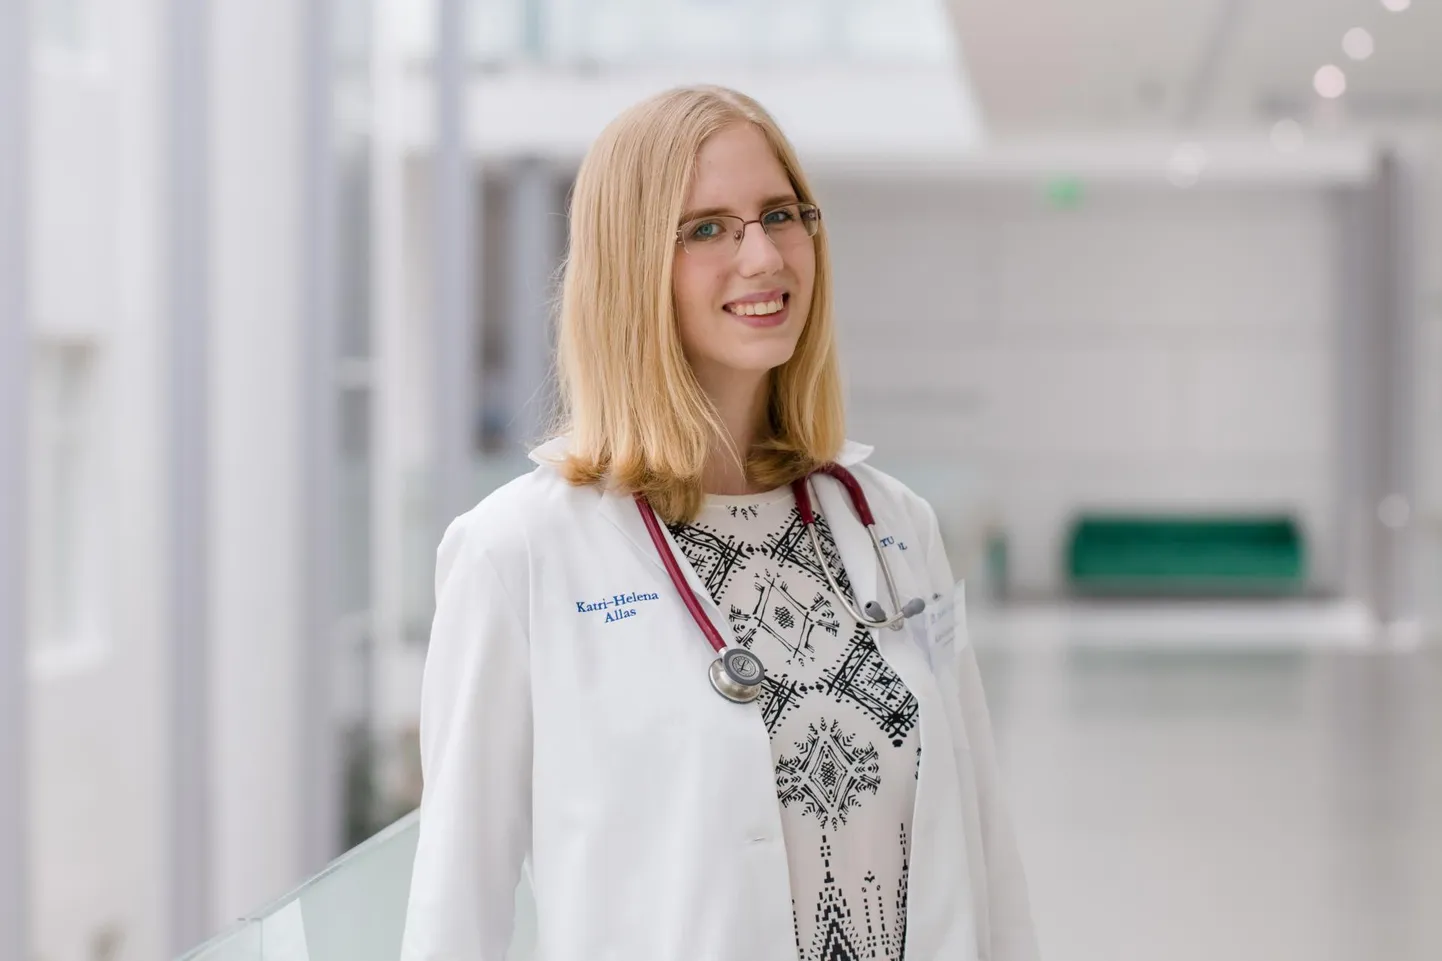 Viienda kursuse arstitudeng Katri-Helena Allas töötab Järvamaa haigla EMOs ja kui vaja, läheb ta appi mujale.
 